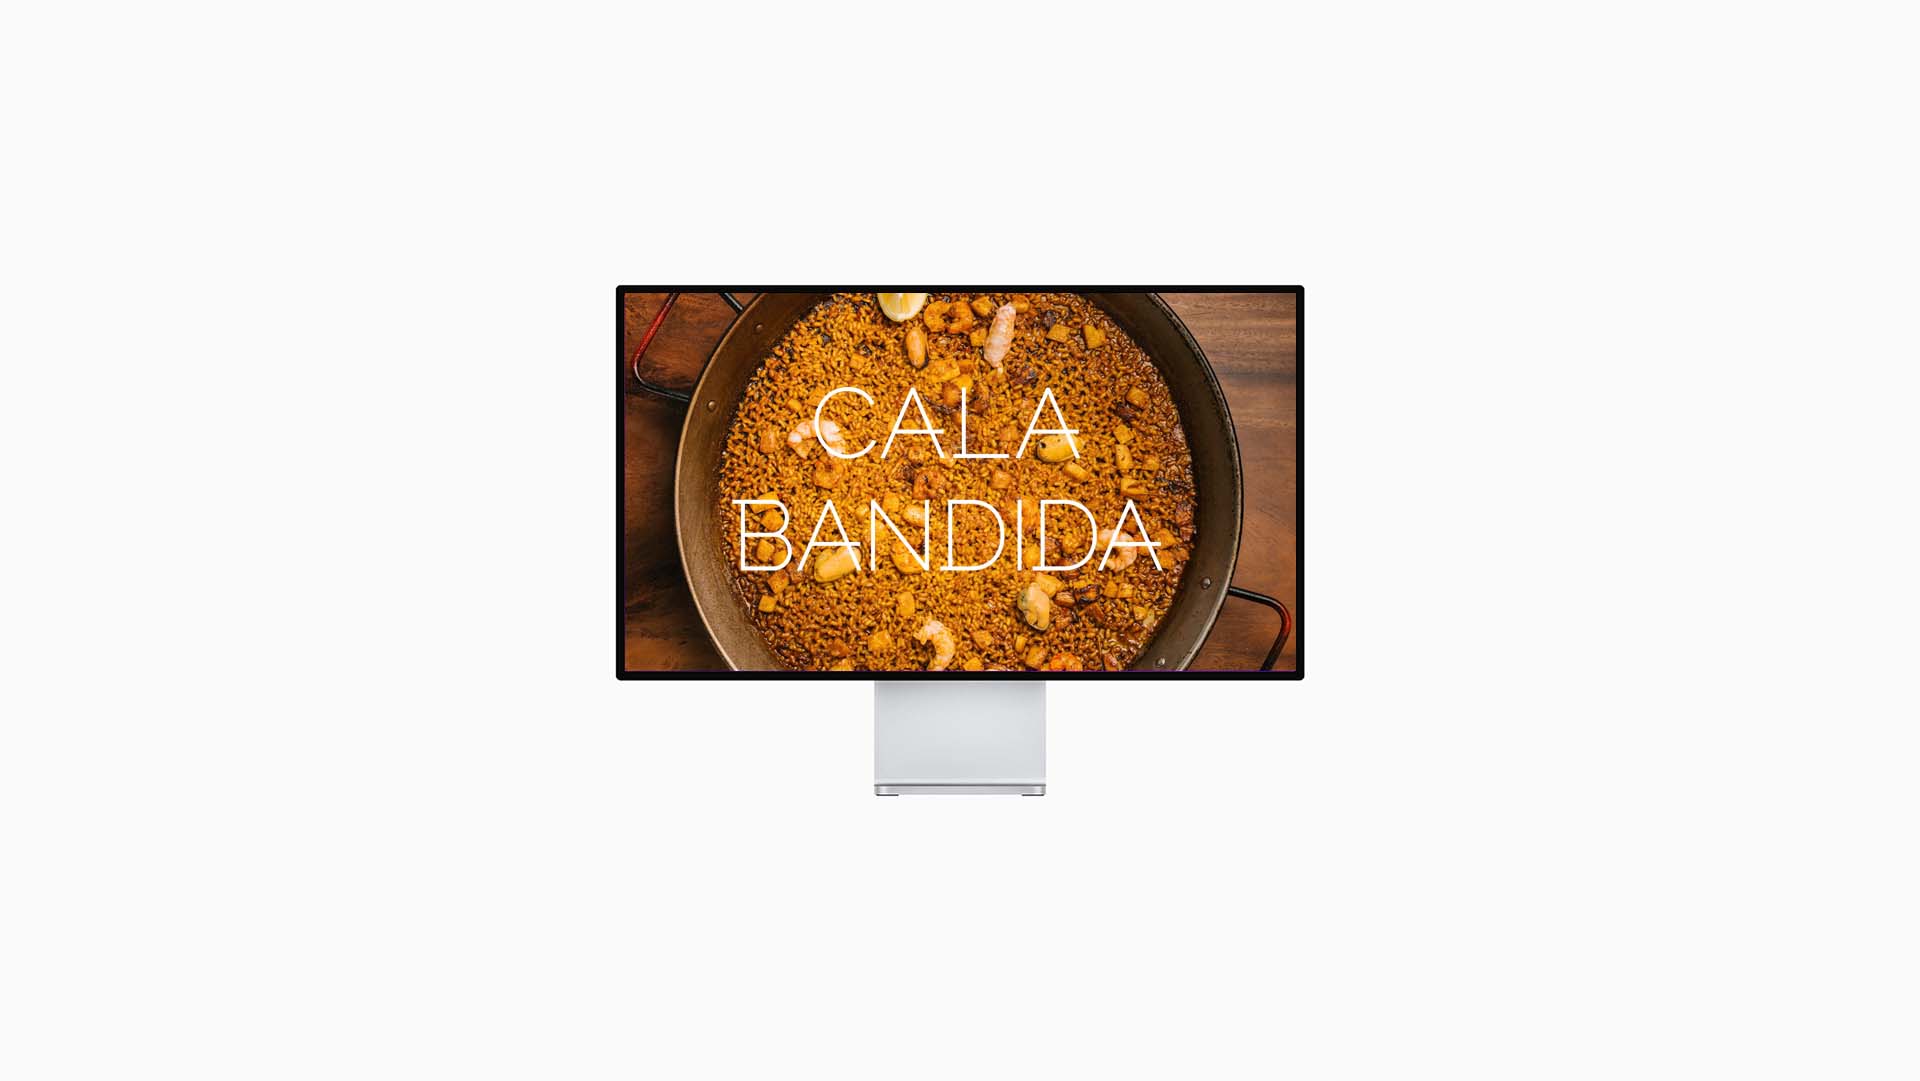 Proyecto web calabandida.com - Mediadea | Agencia de publicidad y marketing digital en Gandia (Valencia)